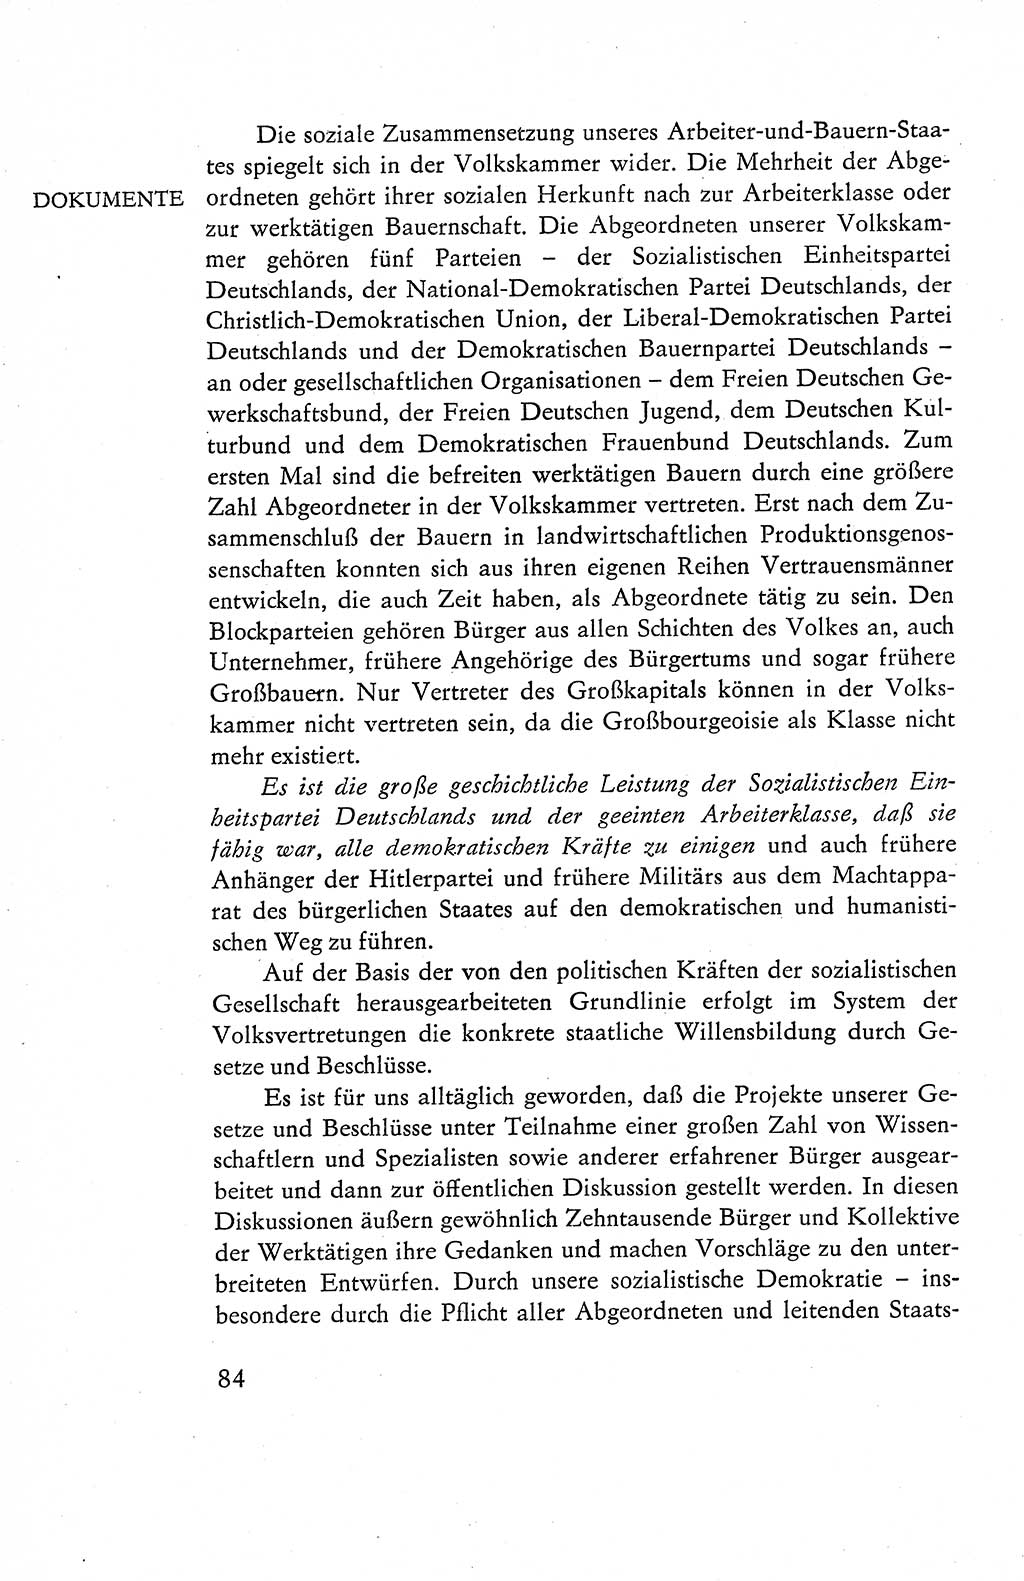 Verfassung der Deutschen Demokratischen Republik (DDR), Dokumente, Kommentar 1969, Band 1, Seite 84 (Verf. DDR Dok. Komm. 1969, Bd. 1, S. 84)